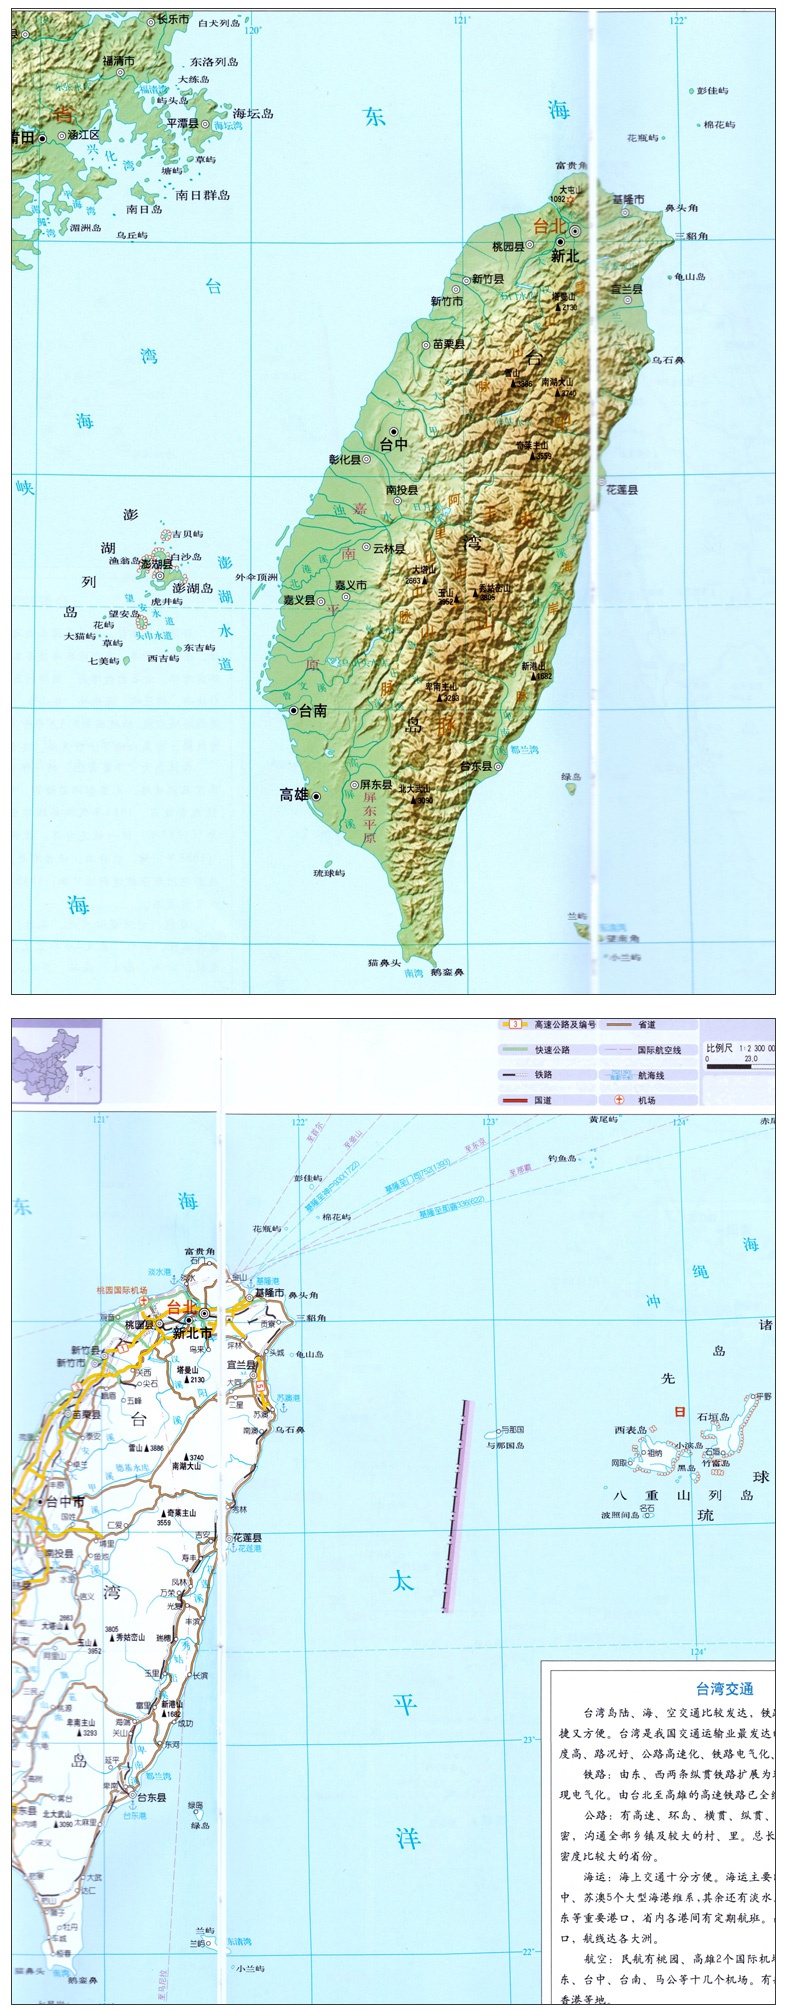 新版 台湾省地图集 中国分省系列地图集 台北 高雄 政区 地形 交通